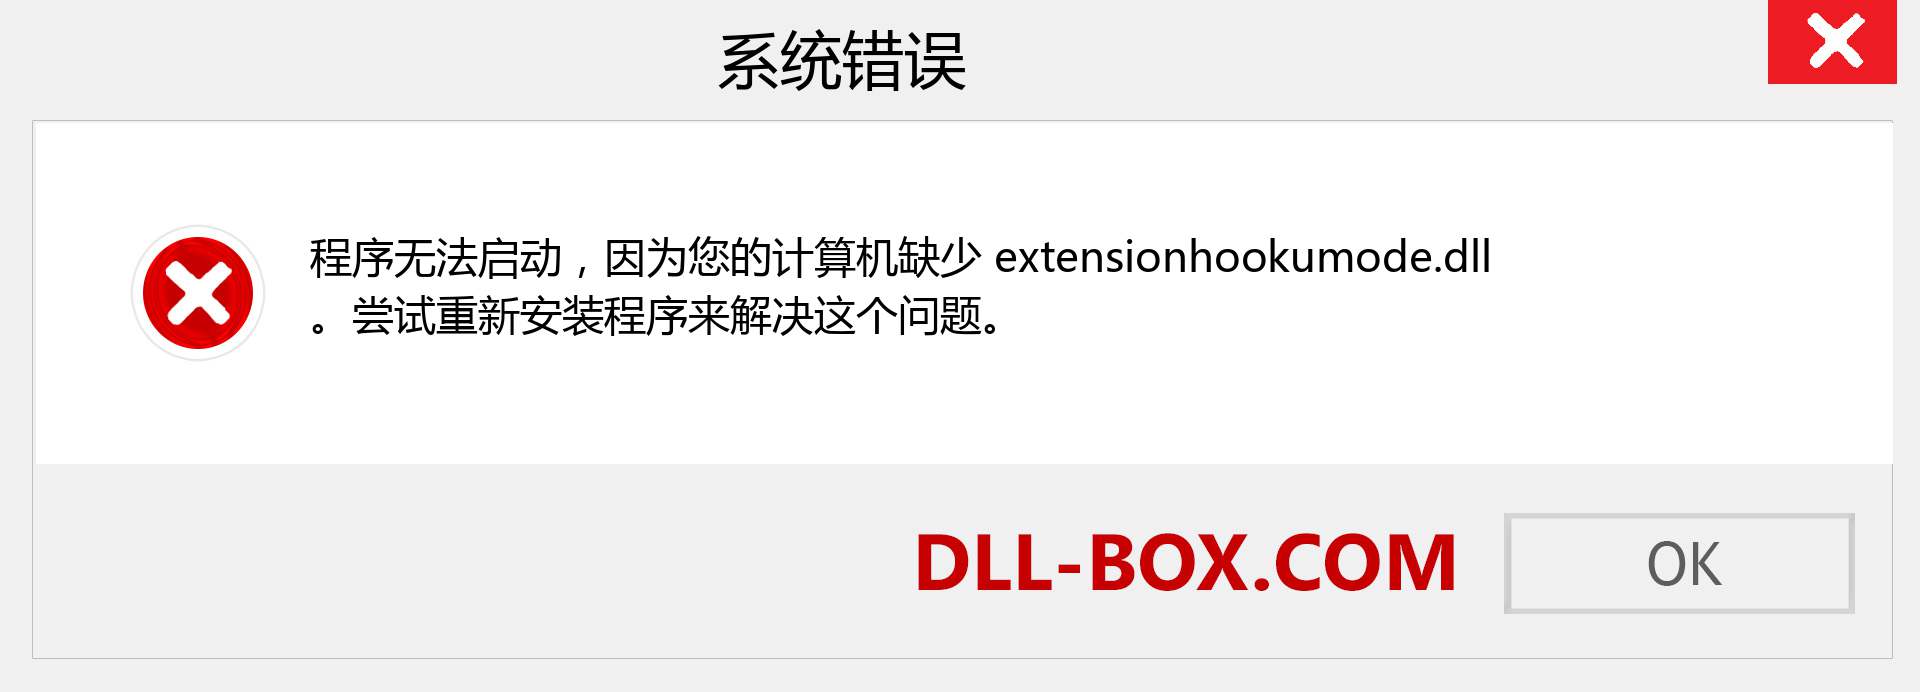 extensionhookumode.dll 文件丢失？。 适用于 Windows 7、8、10 的下载 - 修复 Windows、照片、图像上的 extensionhookumode dll 丢失错误